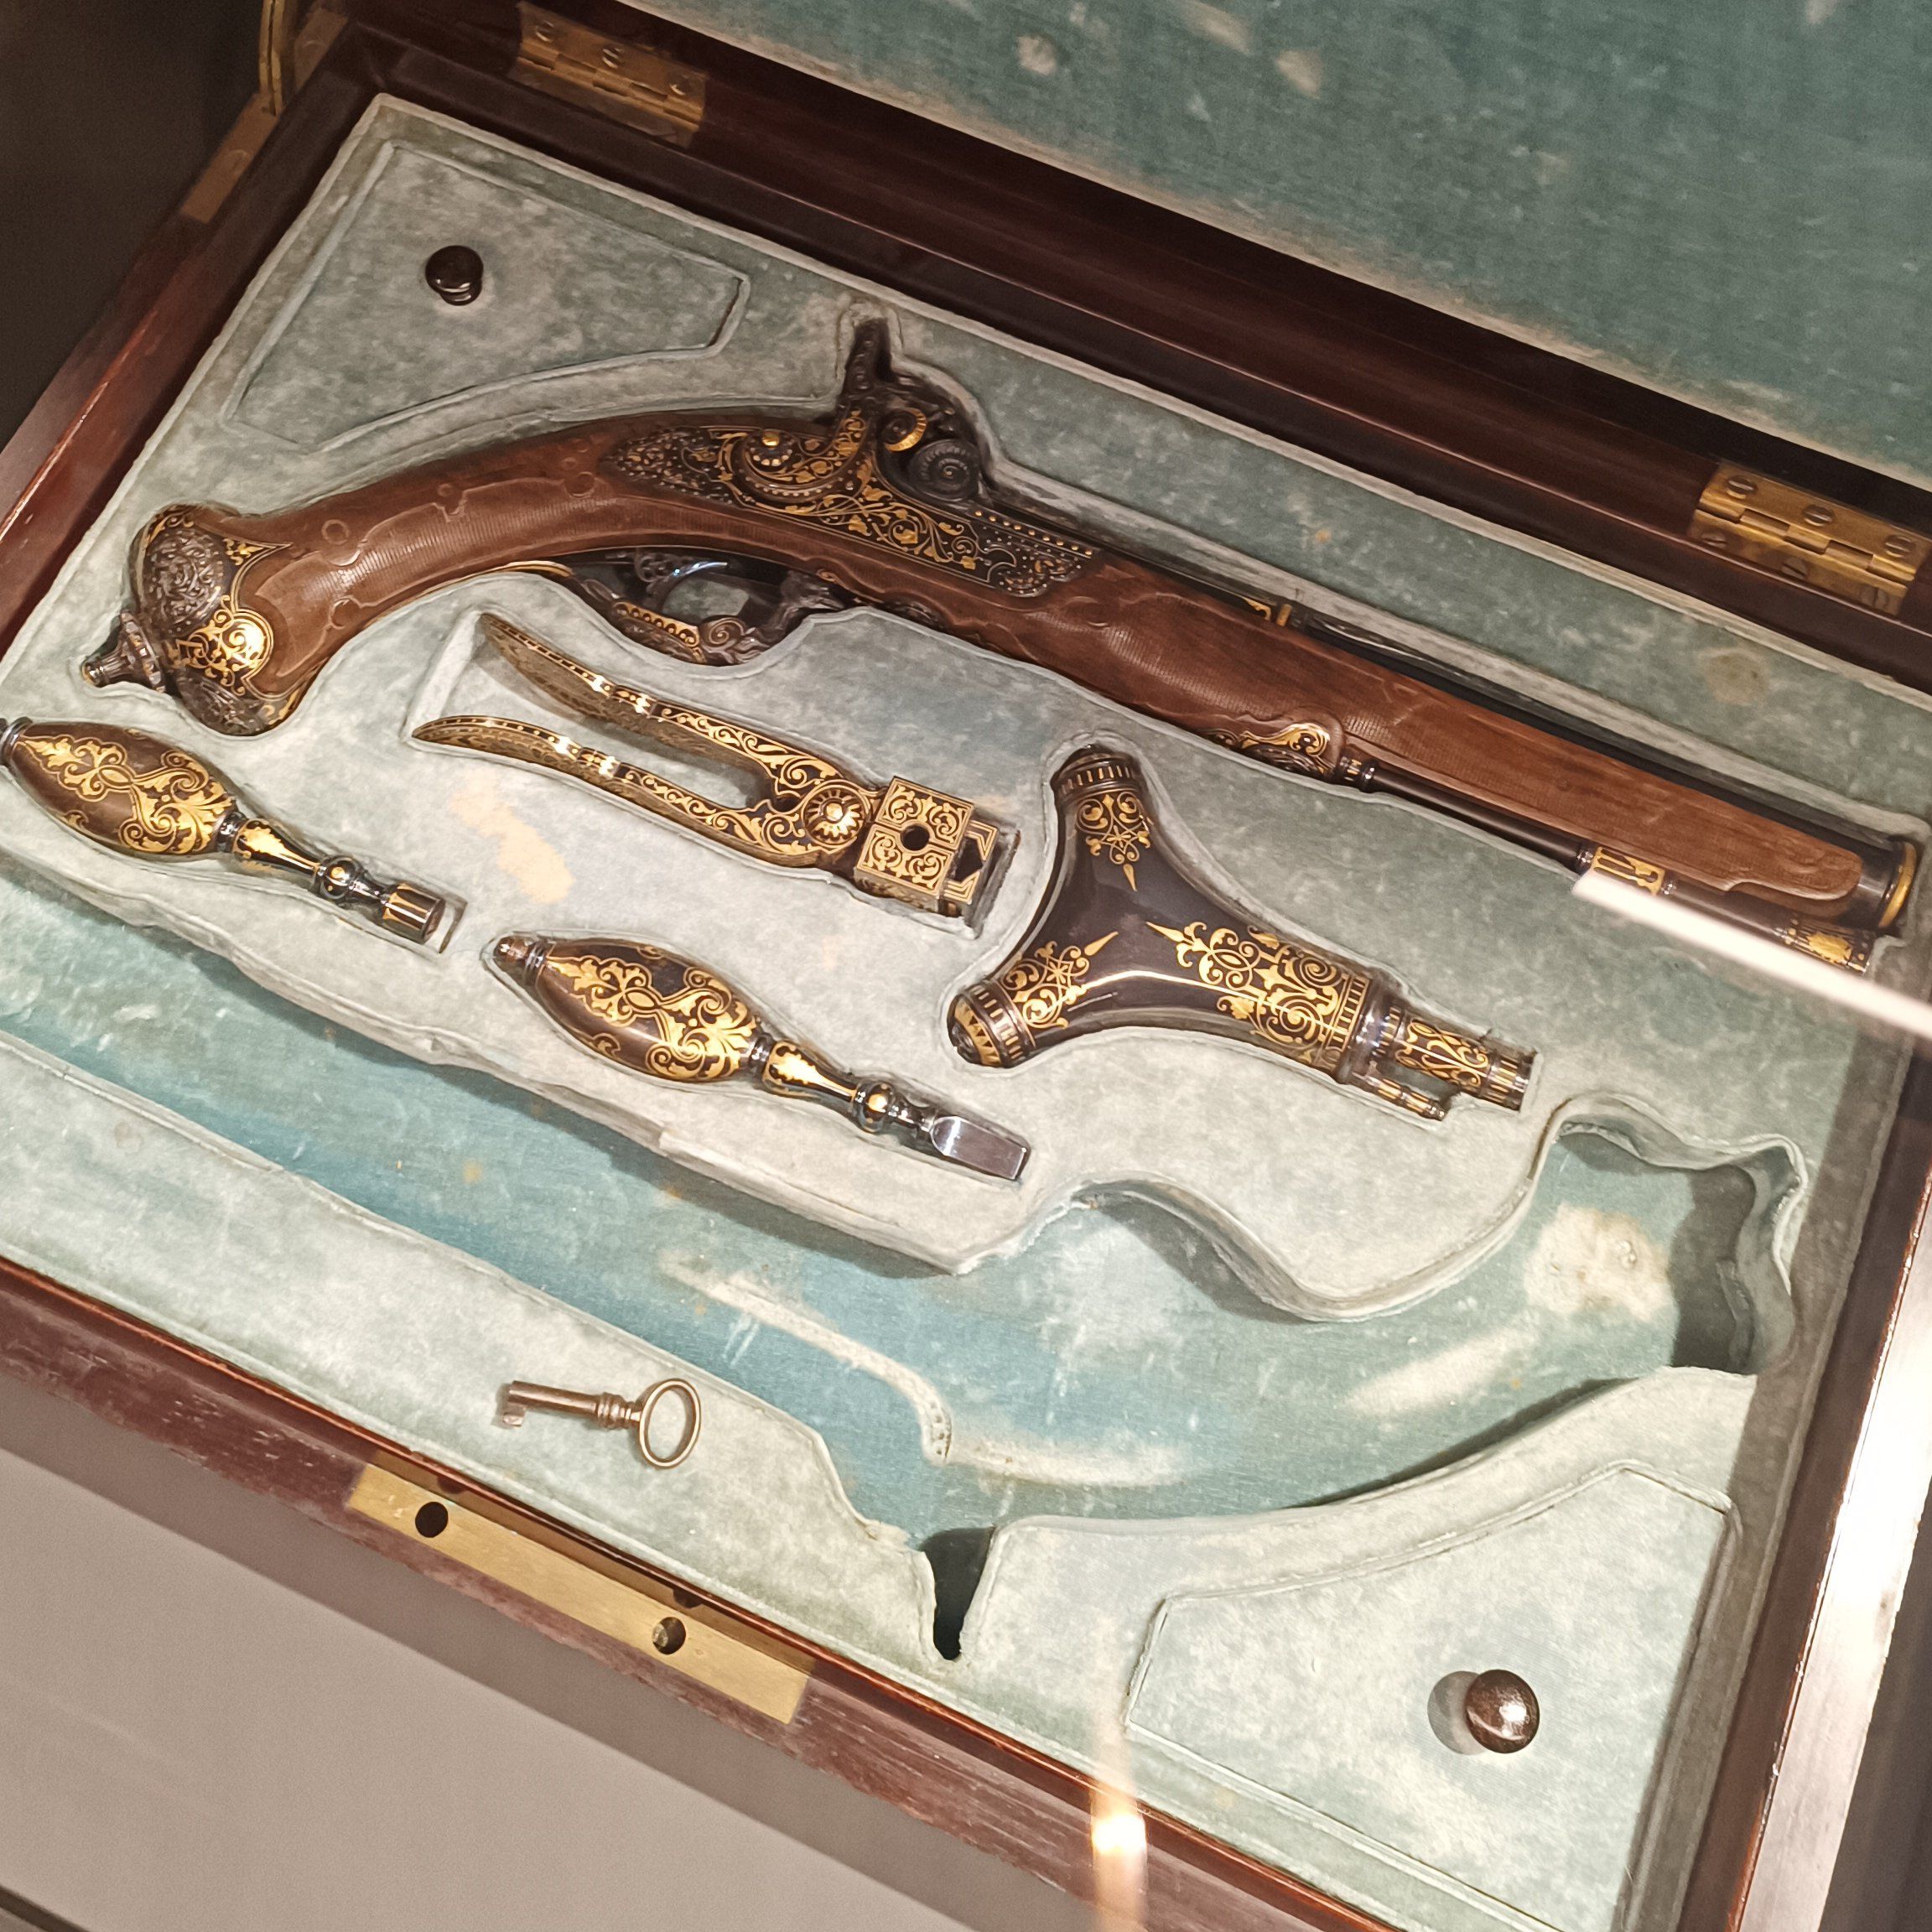 'El lujo del honor', la exposición de pistolas de duelo llega al Museo Nacional del Romanticismo